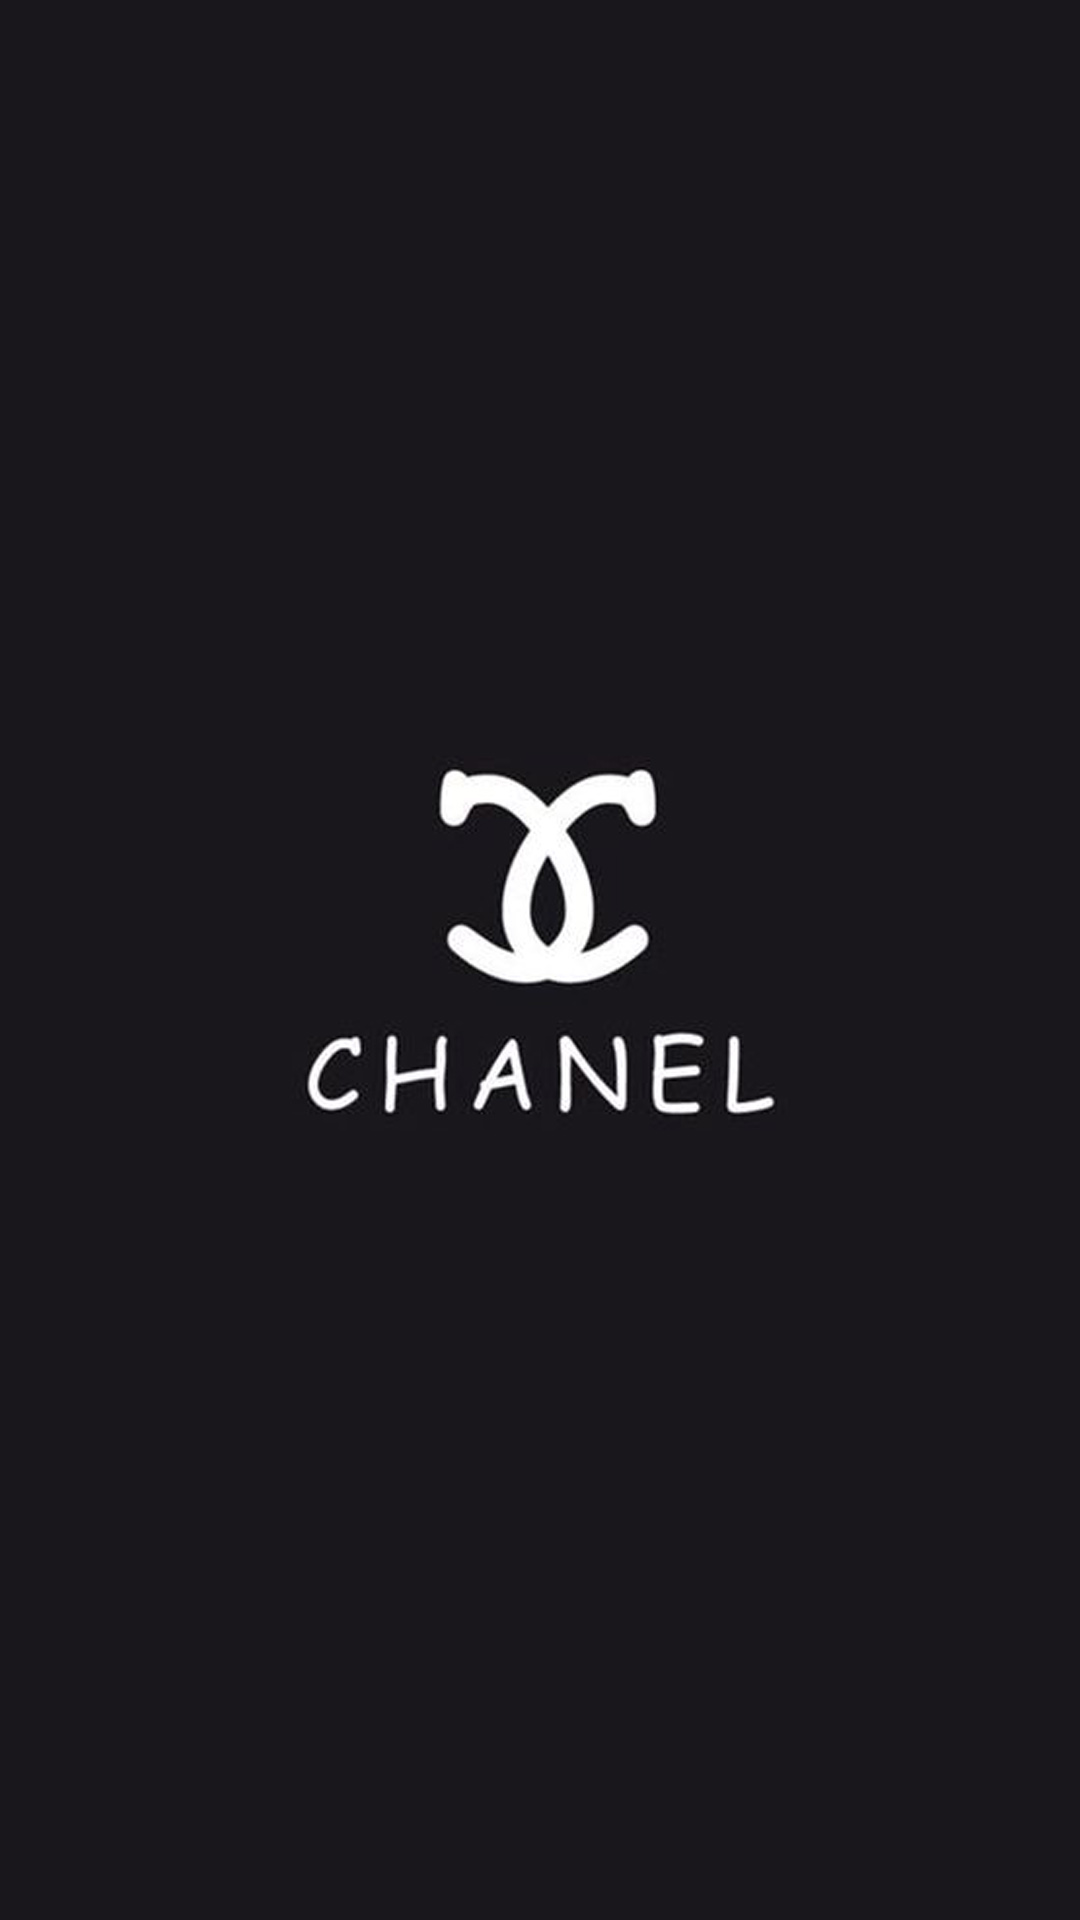 iPhone Chanel Wallpaper Download: Với những bức ảnh nền Chanel đẹp độc đáo, bạn sẽ không muốn bỏ lỡ cơ hội tải về chúng để trang trí cho chiếc iPhone của mình. Hãy khám phá và tải ngay những bức ảnh nền này để cảm nhận sự sang trọng và đẳng cấp của thương hiệu Chanel.